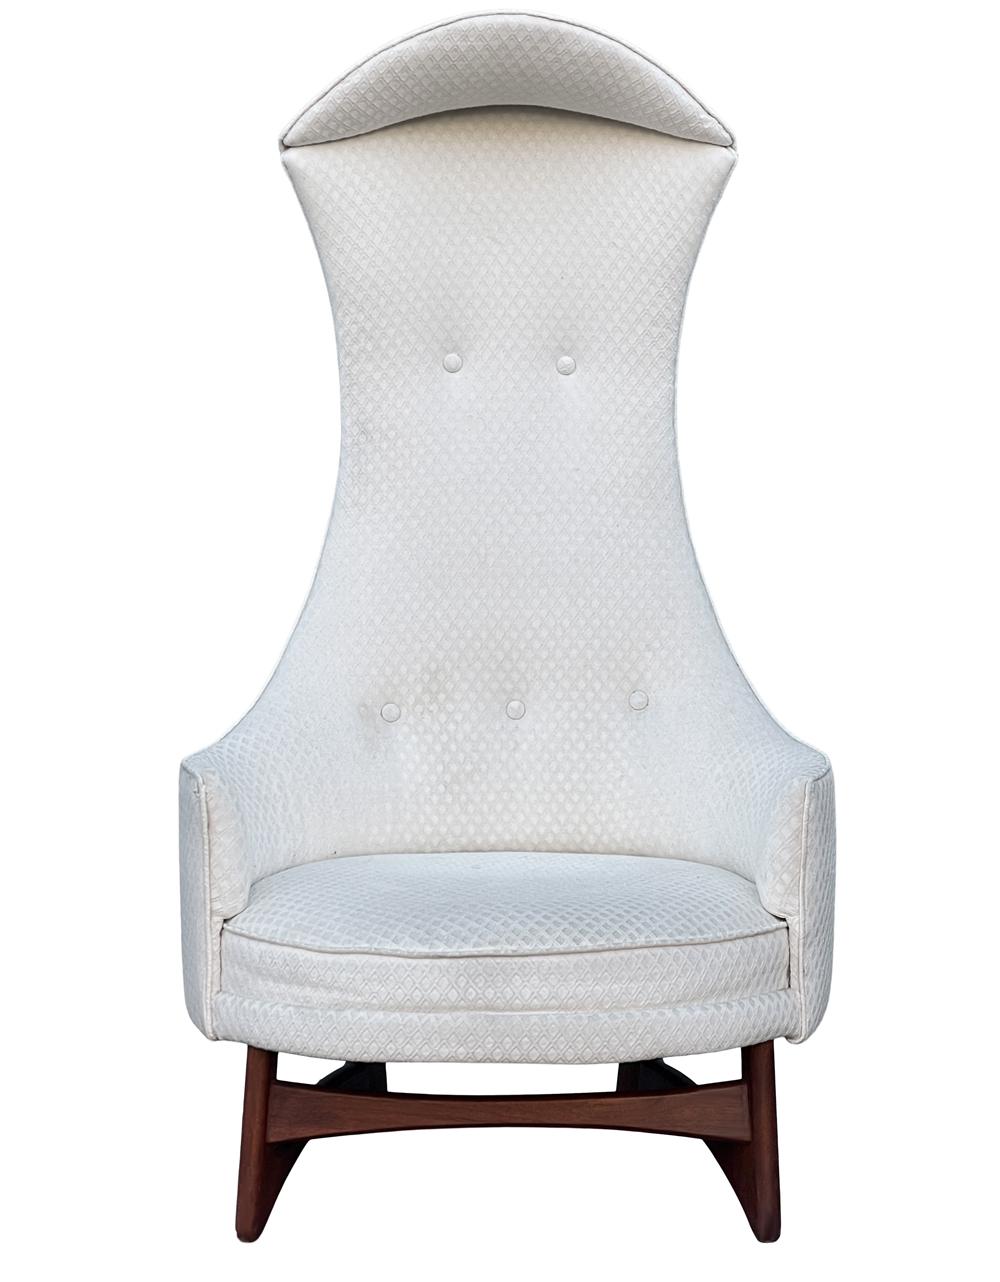 Une chaise royale difficile à trouver, conçue par Adrian Pearsall et produite par Craft Associates vers les années 1960. Cette version moderne d'une chaise à baldaquin présente des pieds sculptés en noyer massif et une tapisserie blanc cassé. La